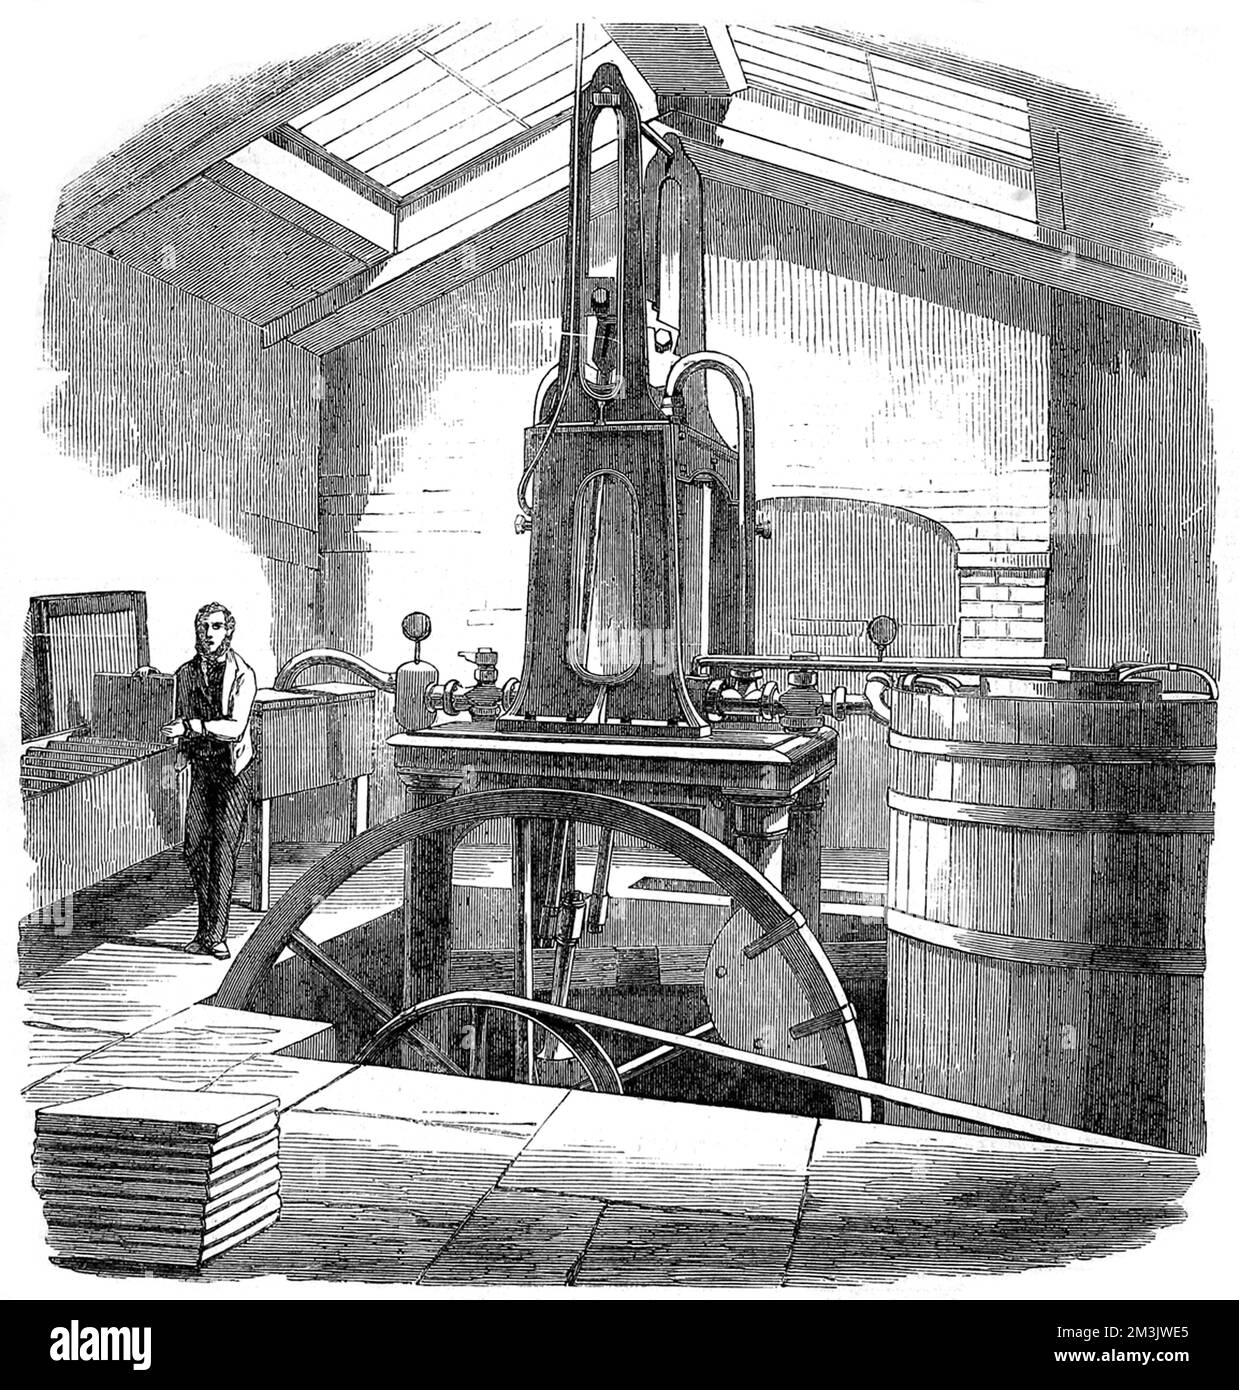 Die Eismaschine, entworfen von Mr. Harrison aus Geelong, Australien. Diese Maschine wurde von Herrn Siebe von Denmark Street, Soho, London, gebaut und war ein Prototyp, der Berichten zufolge 5.000 bis 6.000 kg Eis pro Tag produzieren konnte. Diese Maschine verwendete die Verdunstung von Ether in einem Vakuum, um Kühlung zu erzeugen, und wurde von einer zehn-PS-Dampfmaschine angetrieben. 1858 Stockfoto